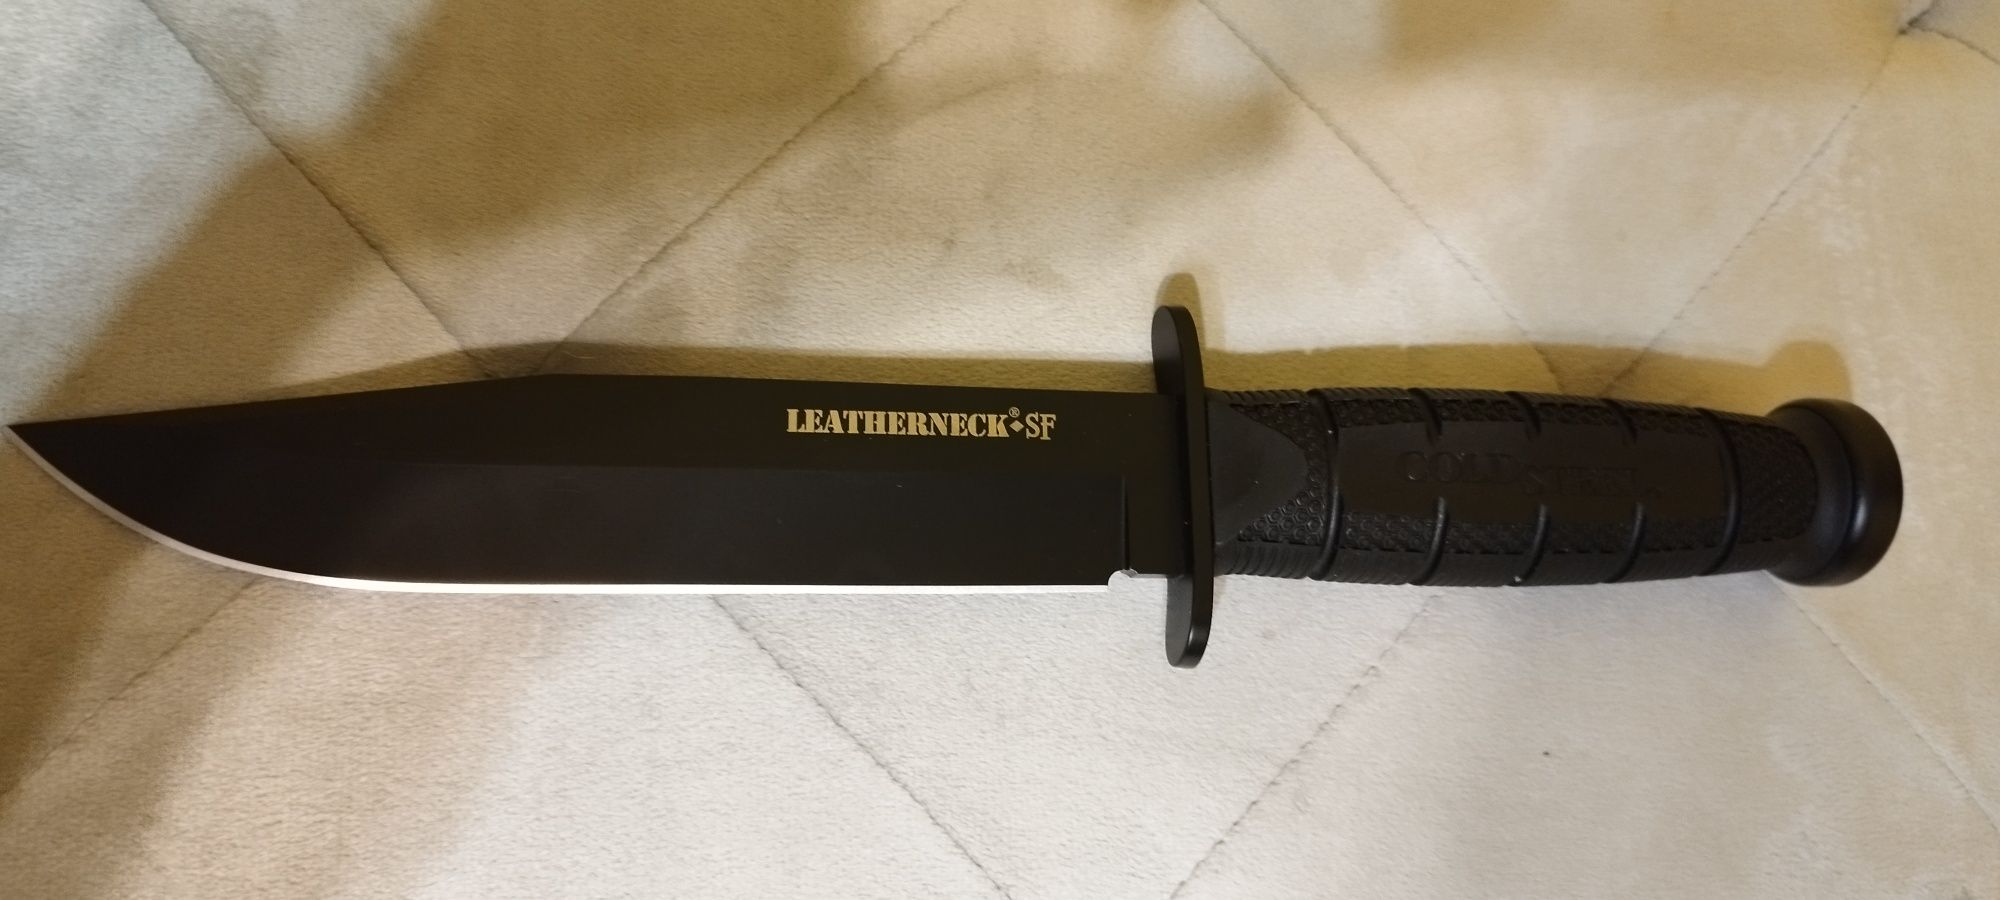 Nóż Wojskowy Cold steel leatherneck, okazja